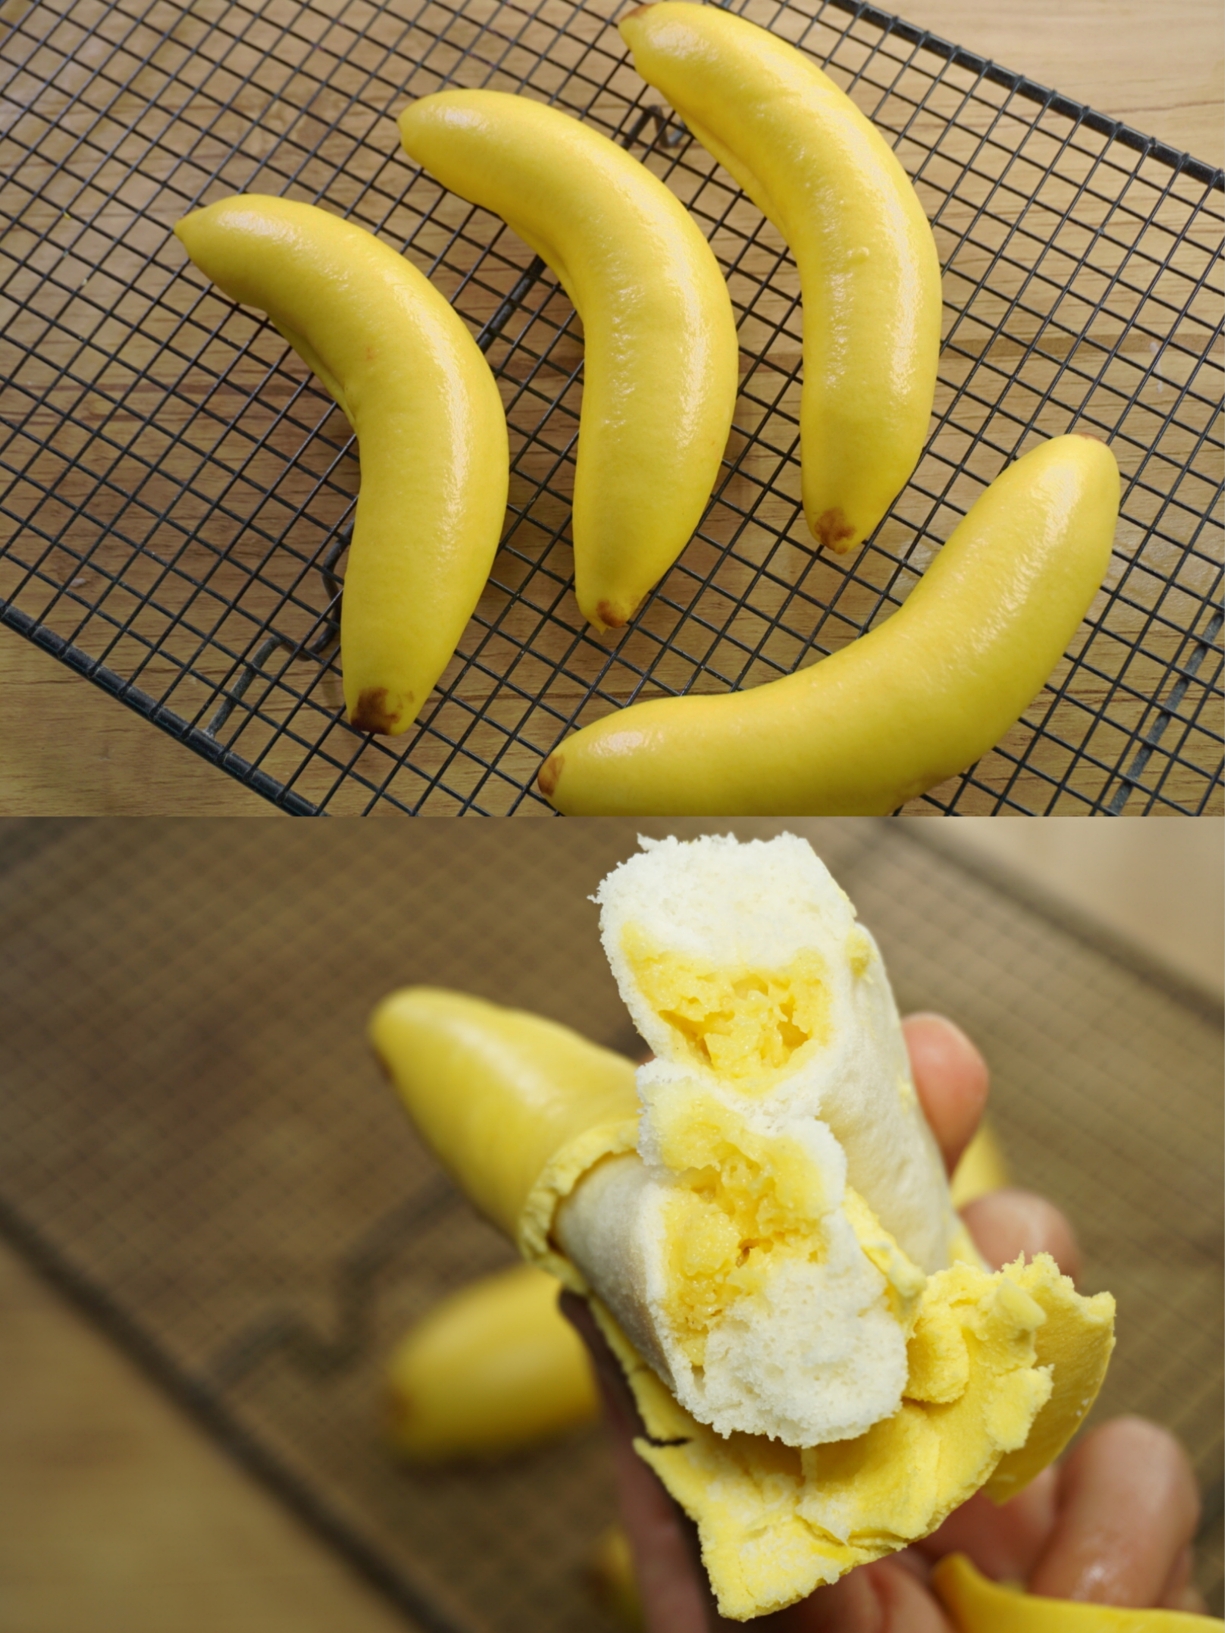 震惊😨原来香蕉皮真的可以吃